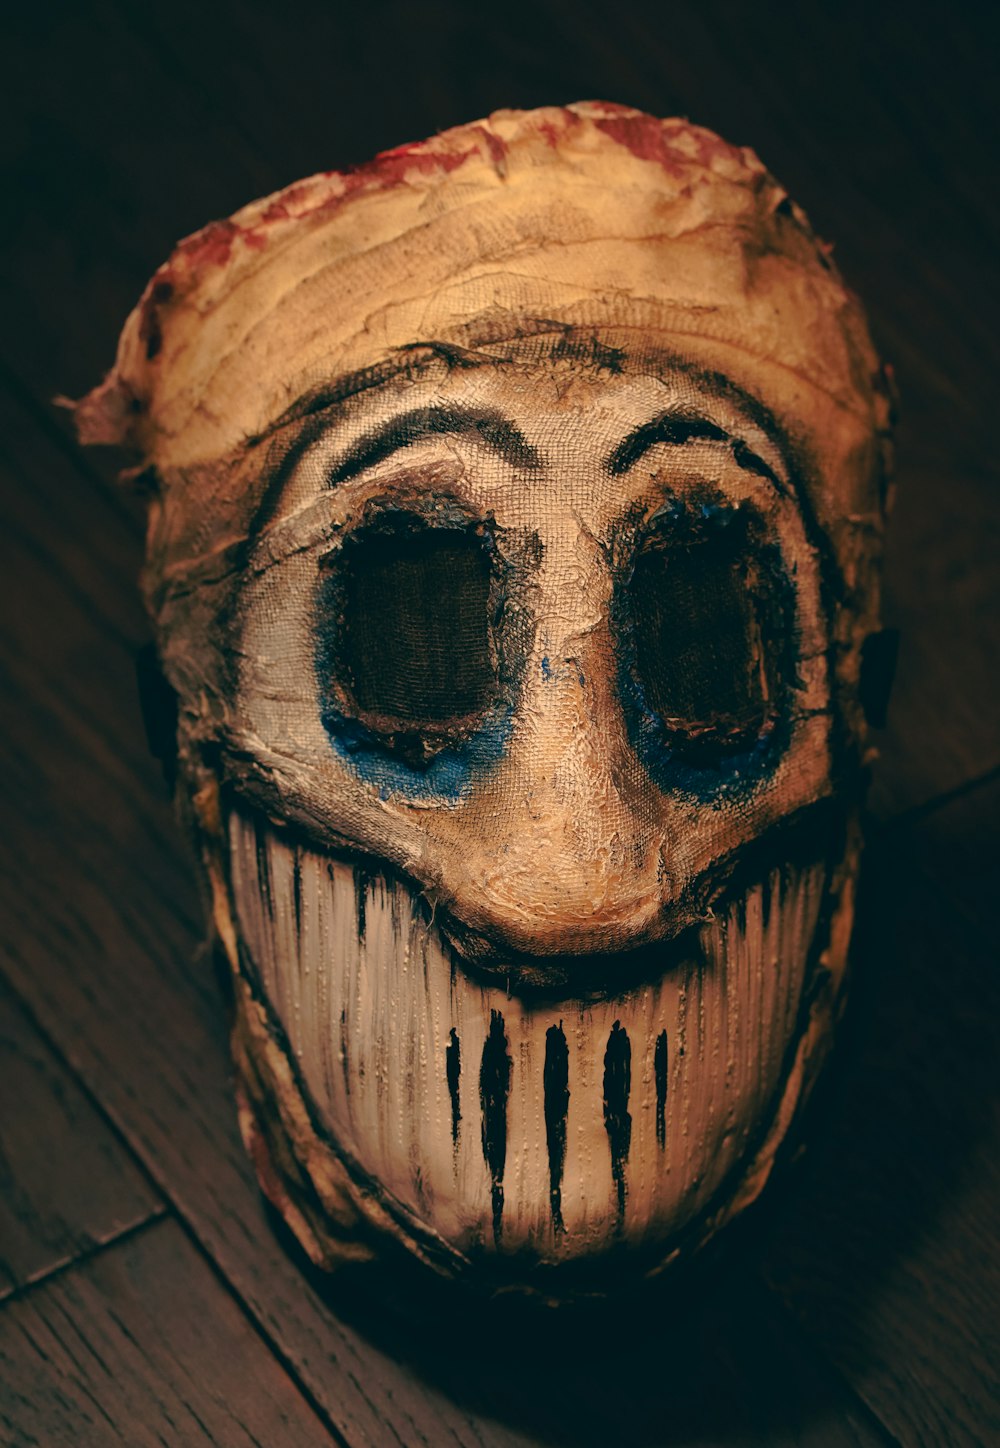 eine gruselig aussehende Maske auf einem Holzboden